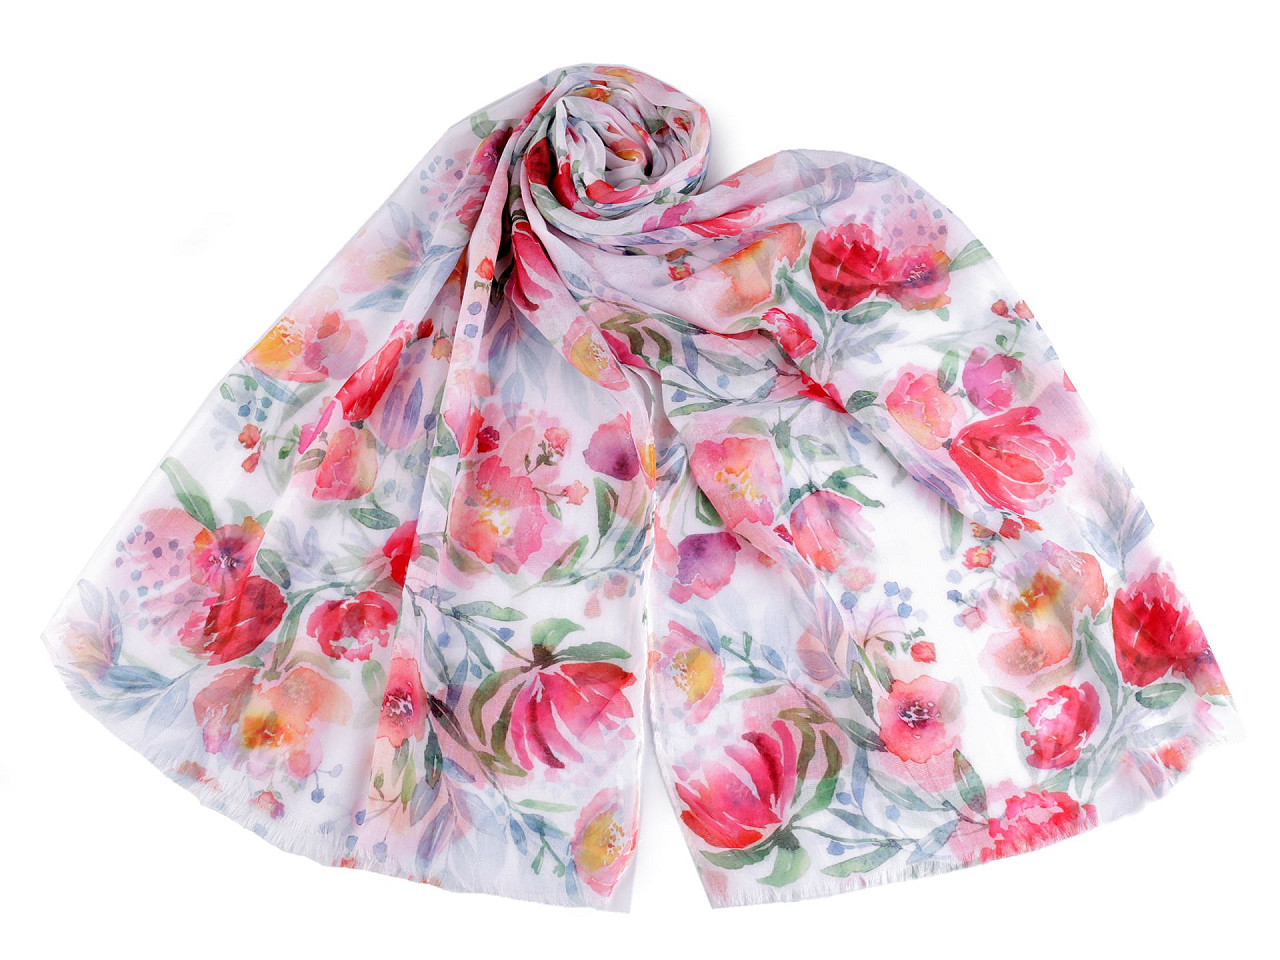 Letní šátek / šála s malovanými květy 70x180 cm, barva 4 červenorůžová